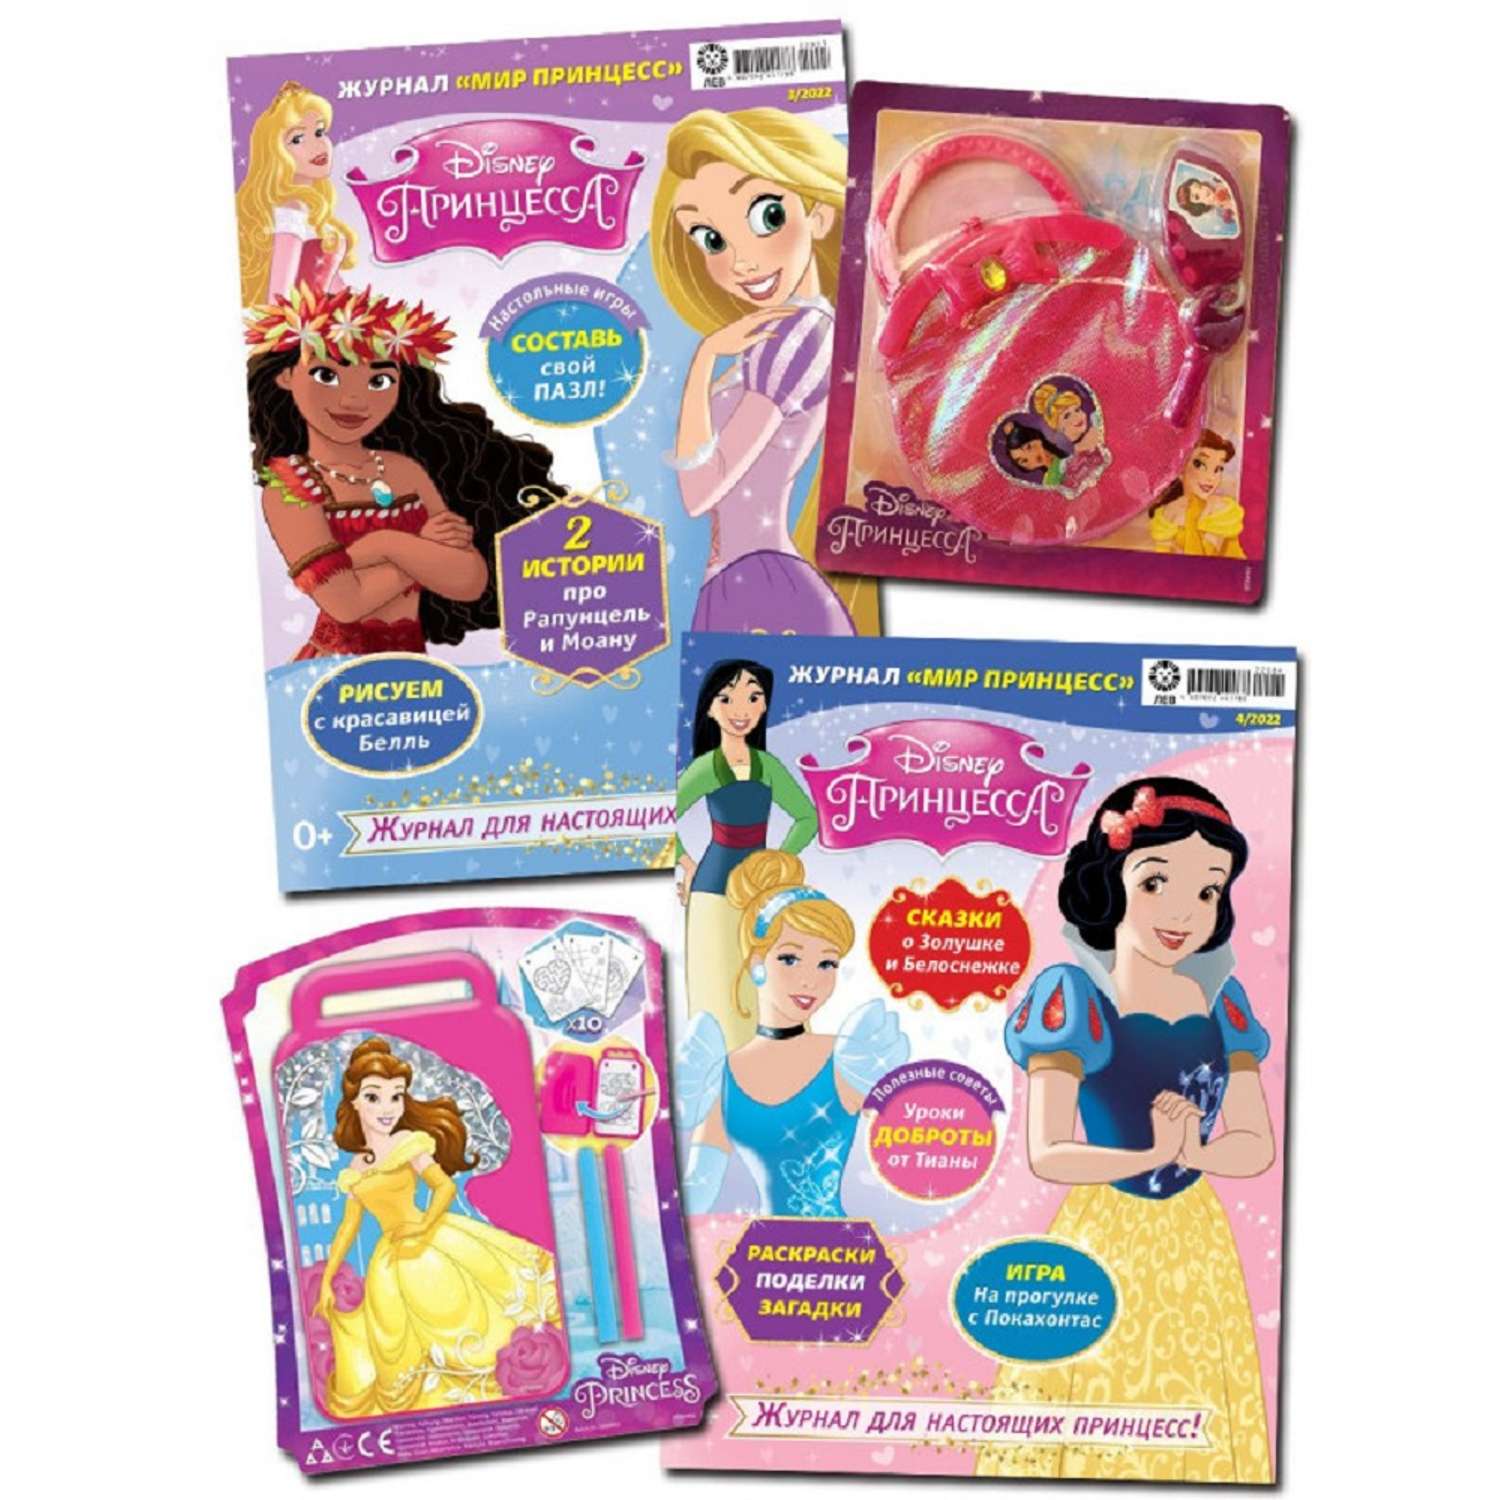 Журналы Disney Princess Комплект №03/22 и №04/22. Мир принцесс для детей - фото 1